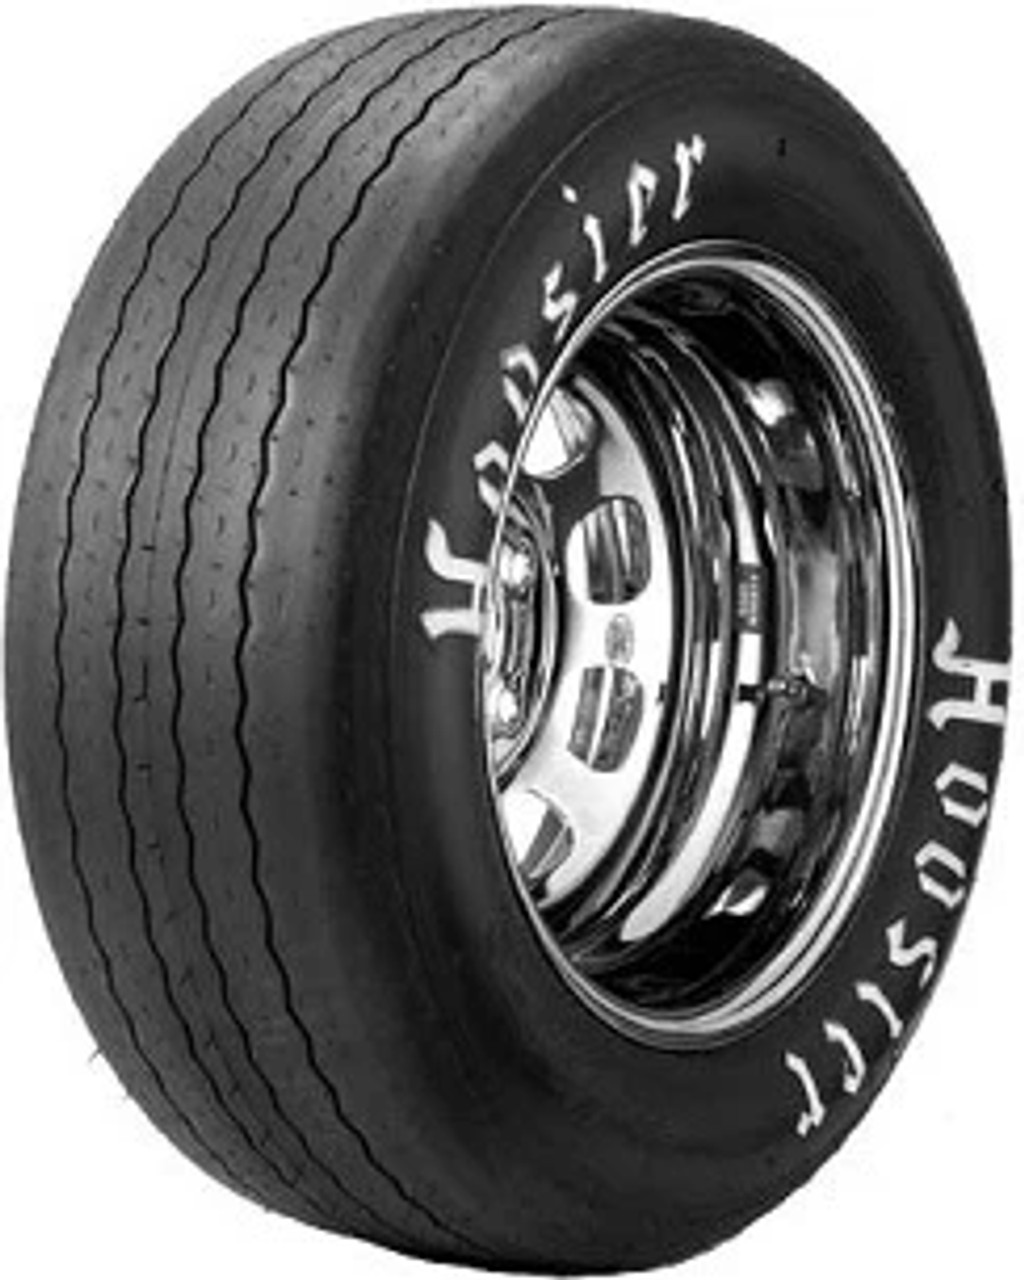 Hoosier Vintage Tire 26.5/11.0-15 HOTD R - 44309HOTDR